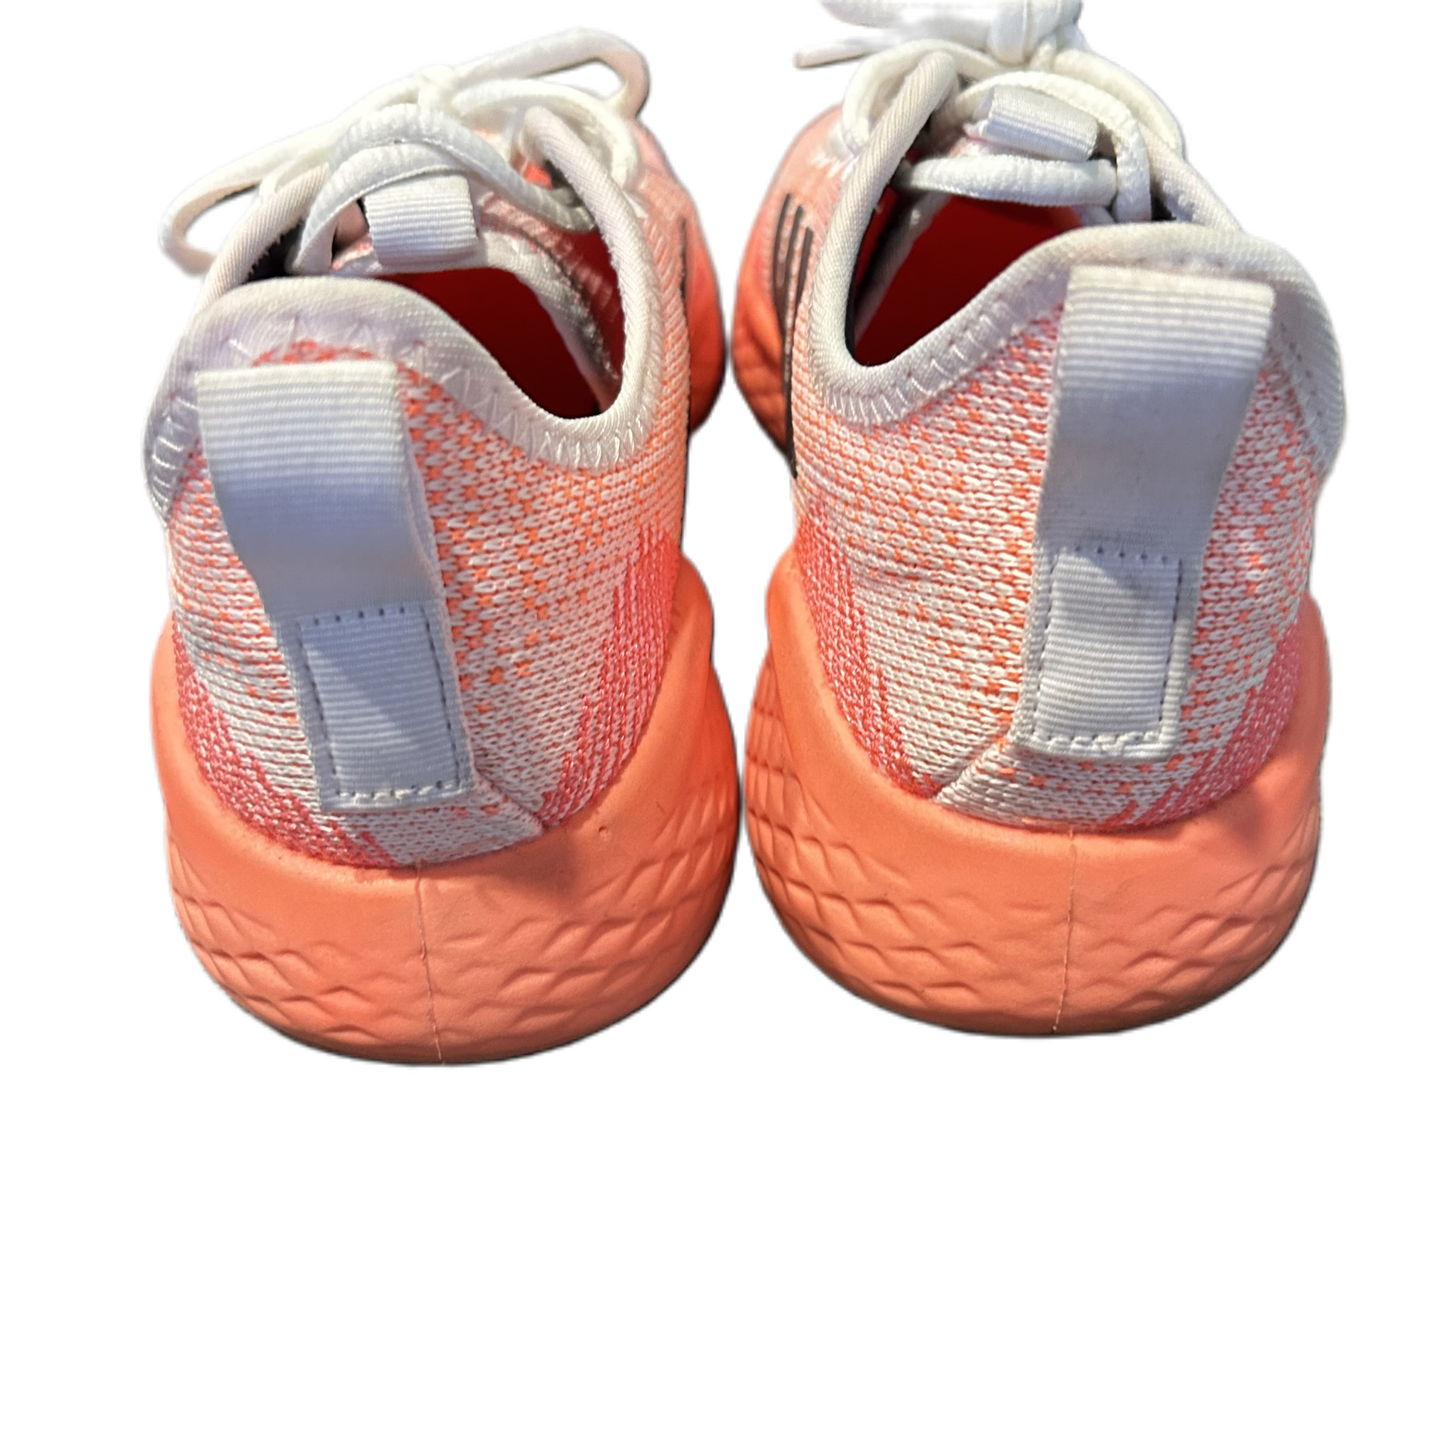 Orange & White Shoes Athletic By Adidas, Size: 8